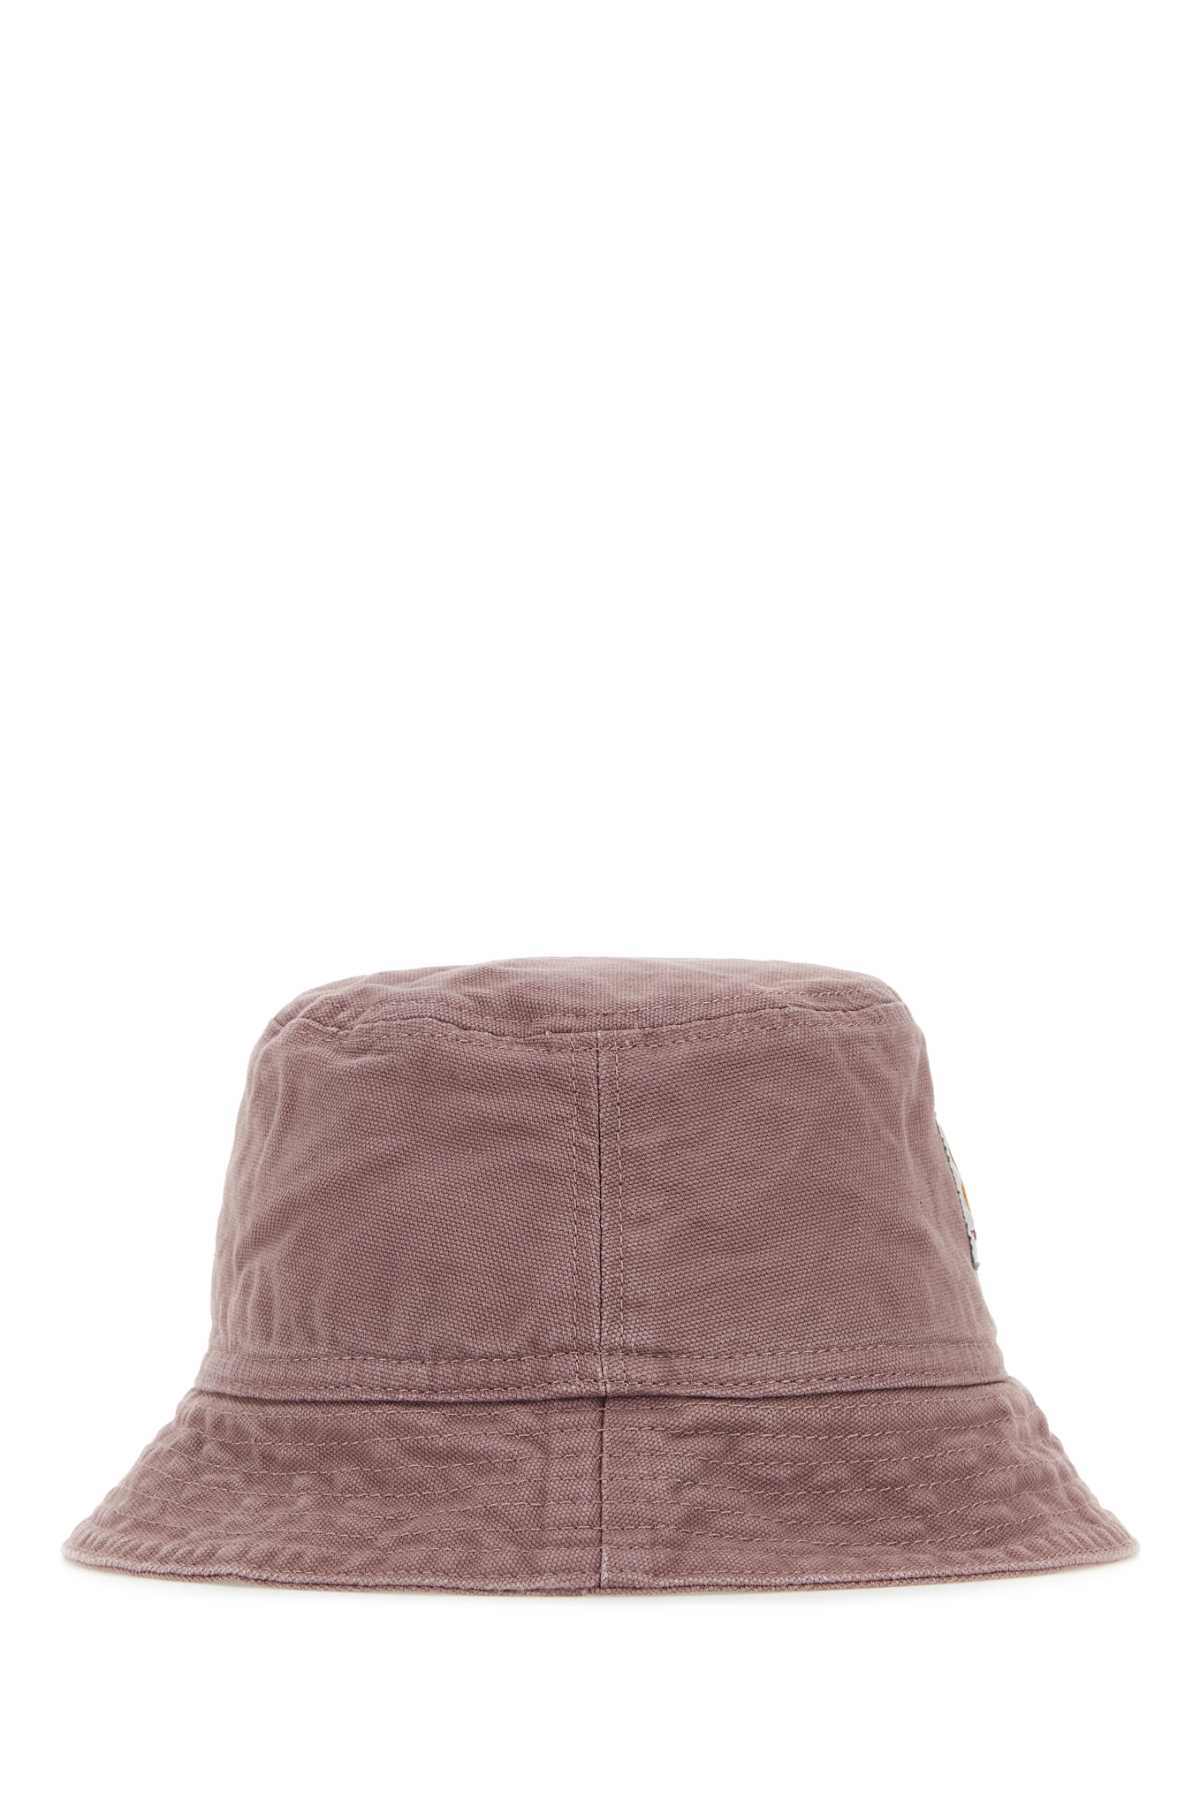 Carhartt Antiqued Pink Cotton Bayfield Bucket Hat In Blk